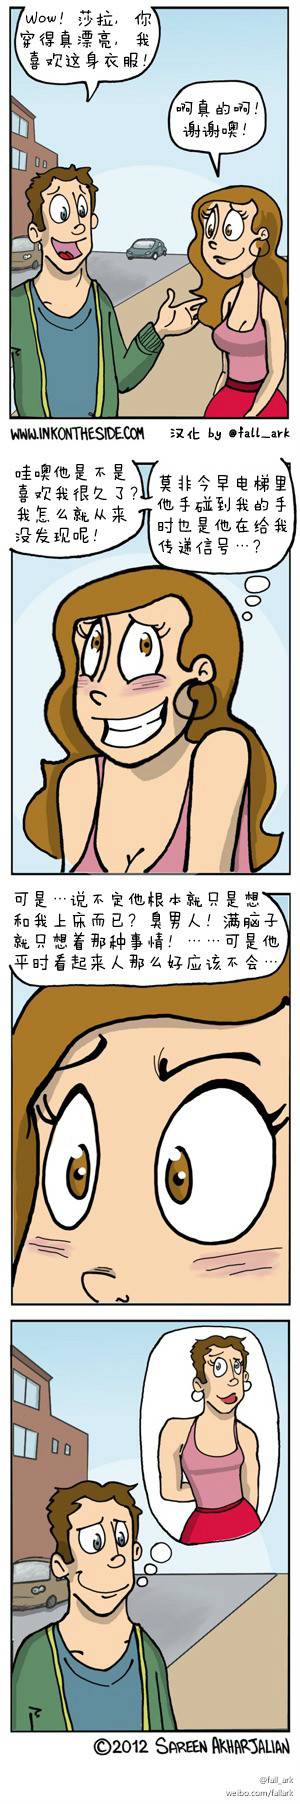 邪恶漫画爆笑囧图第265刊：美女警察的诱惑